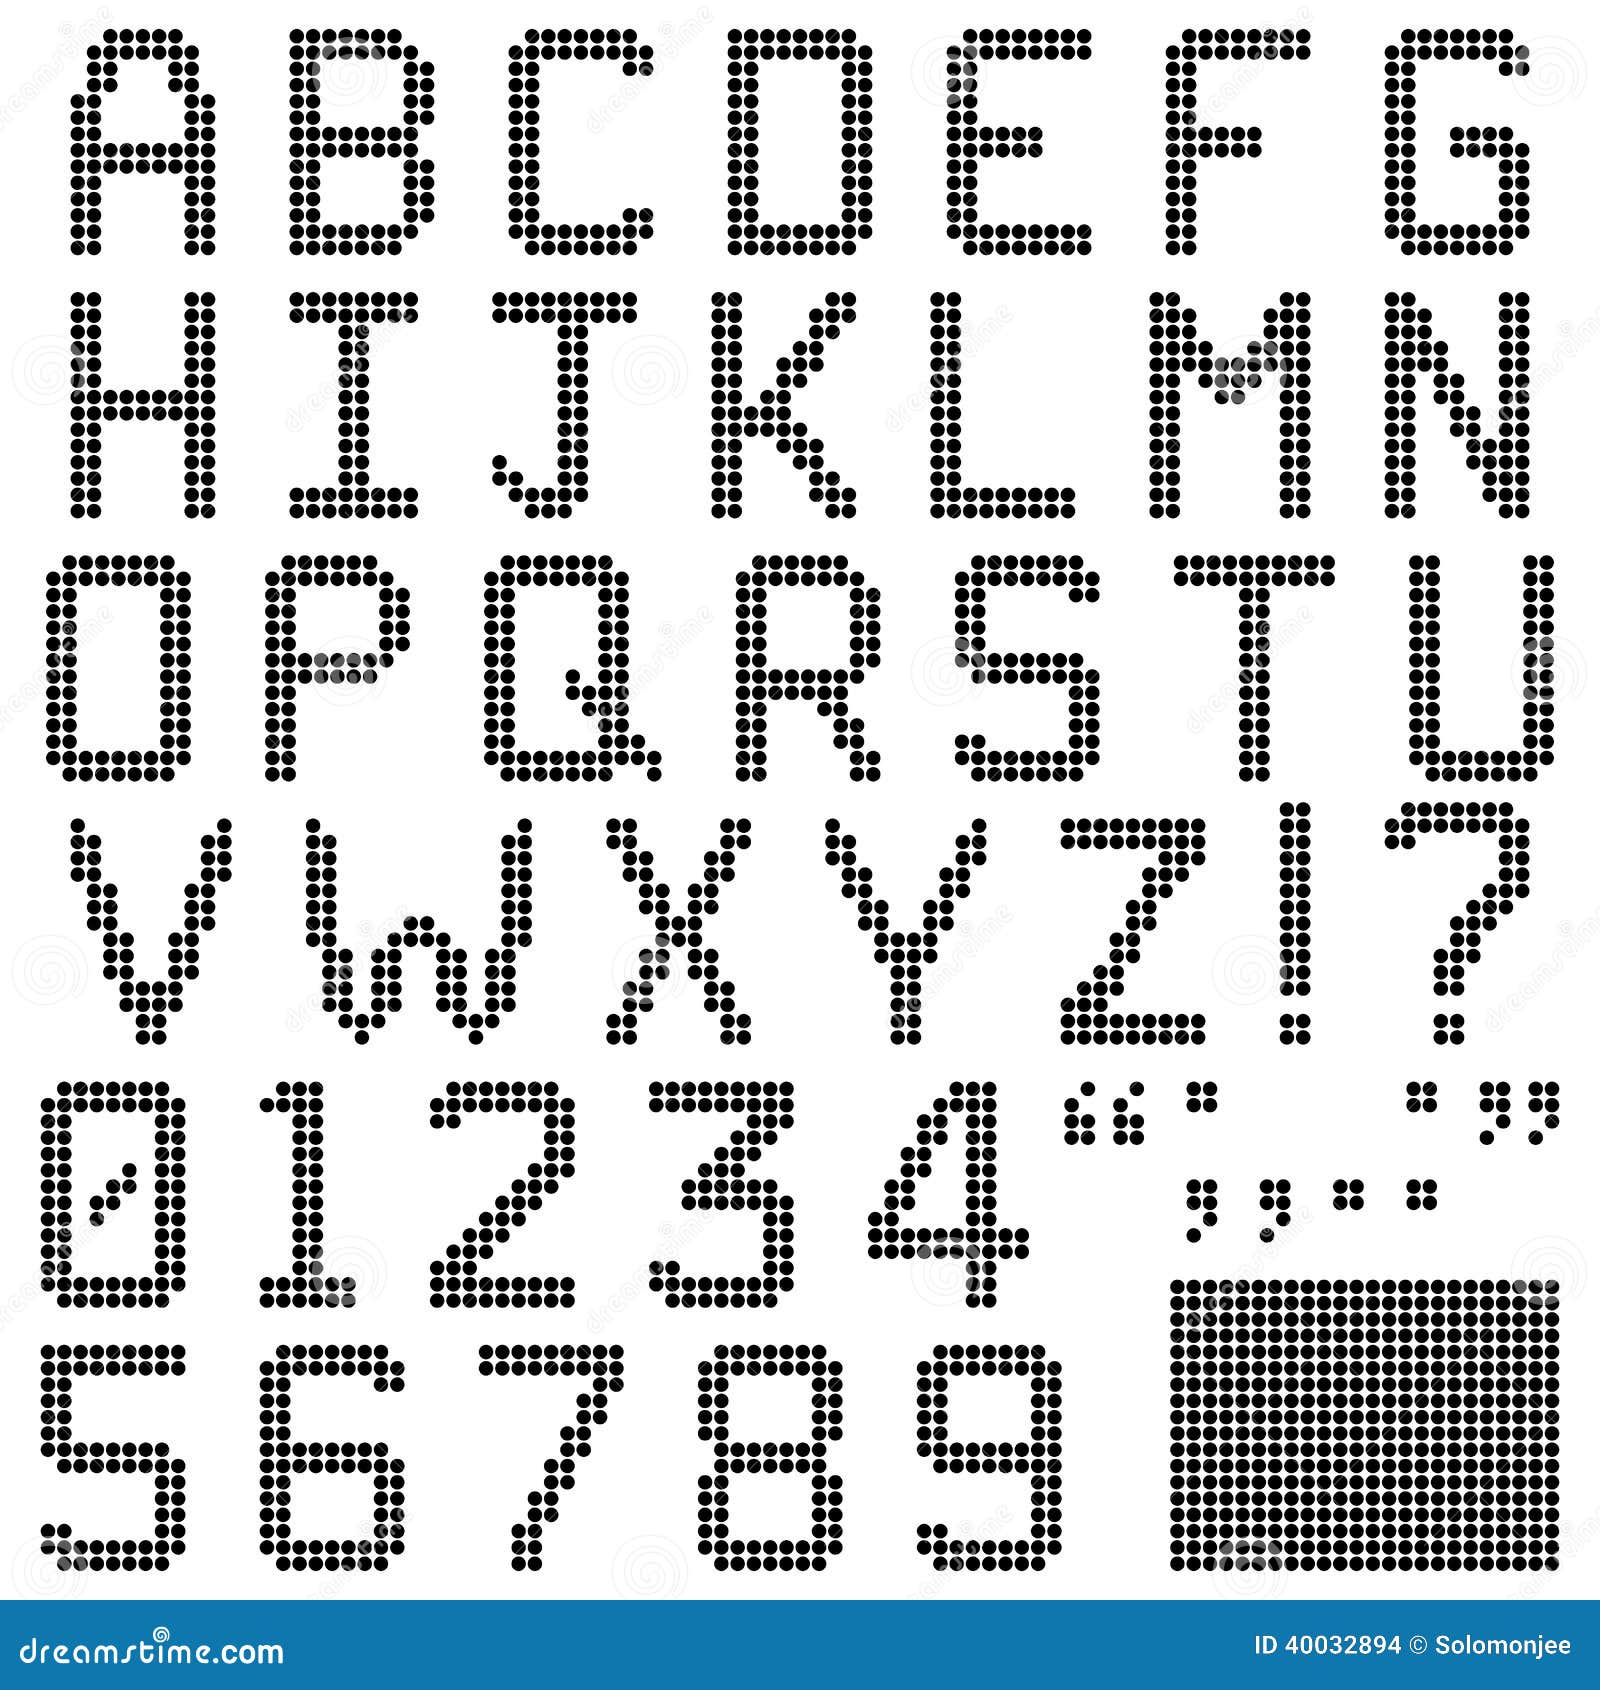 Alfabeti, numeri e caratteri di punteggiatura nella retro fonte rotonda del pixel. Isolato e contiene i pixel di riserva. Identificazione dell'archivio: 40032969 hanno gli alfabeti minuscoli.